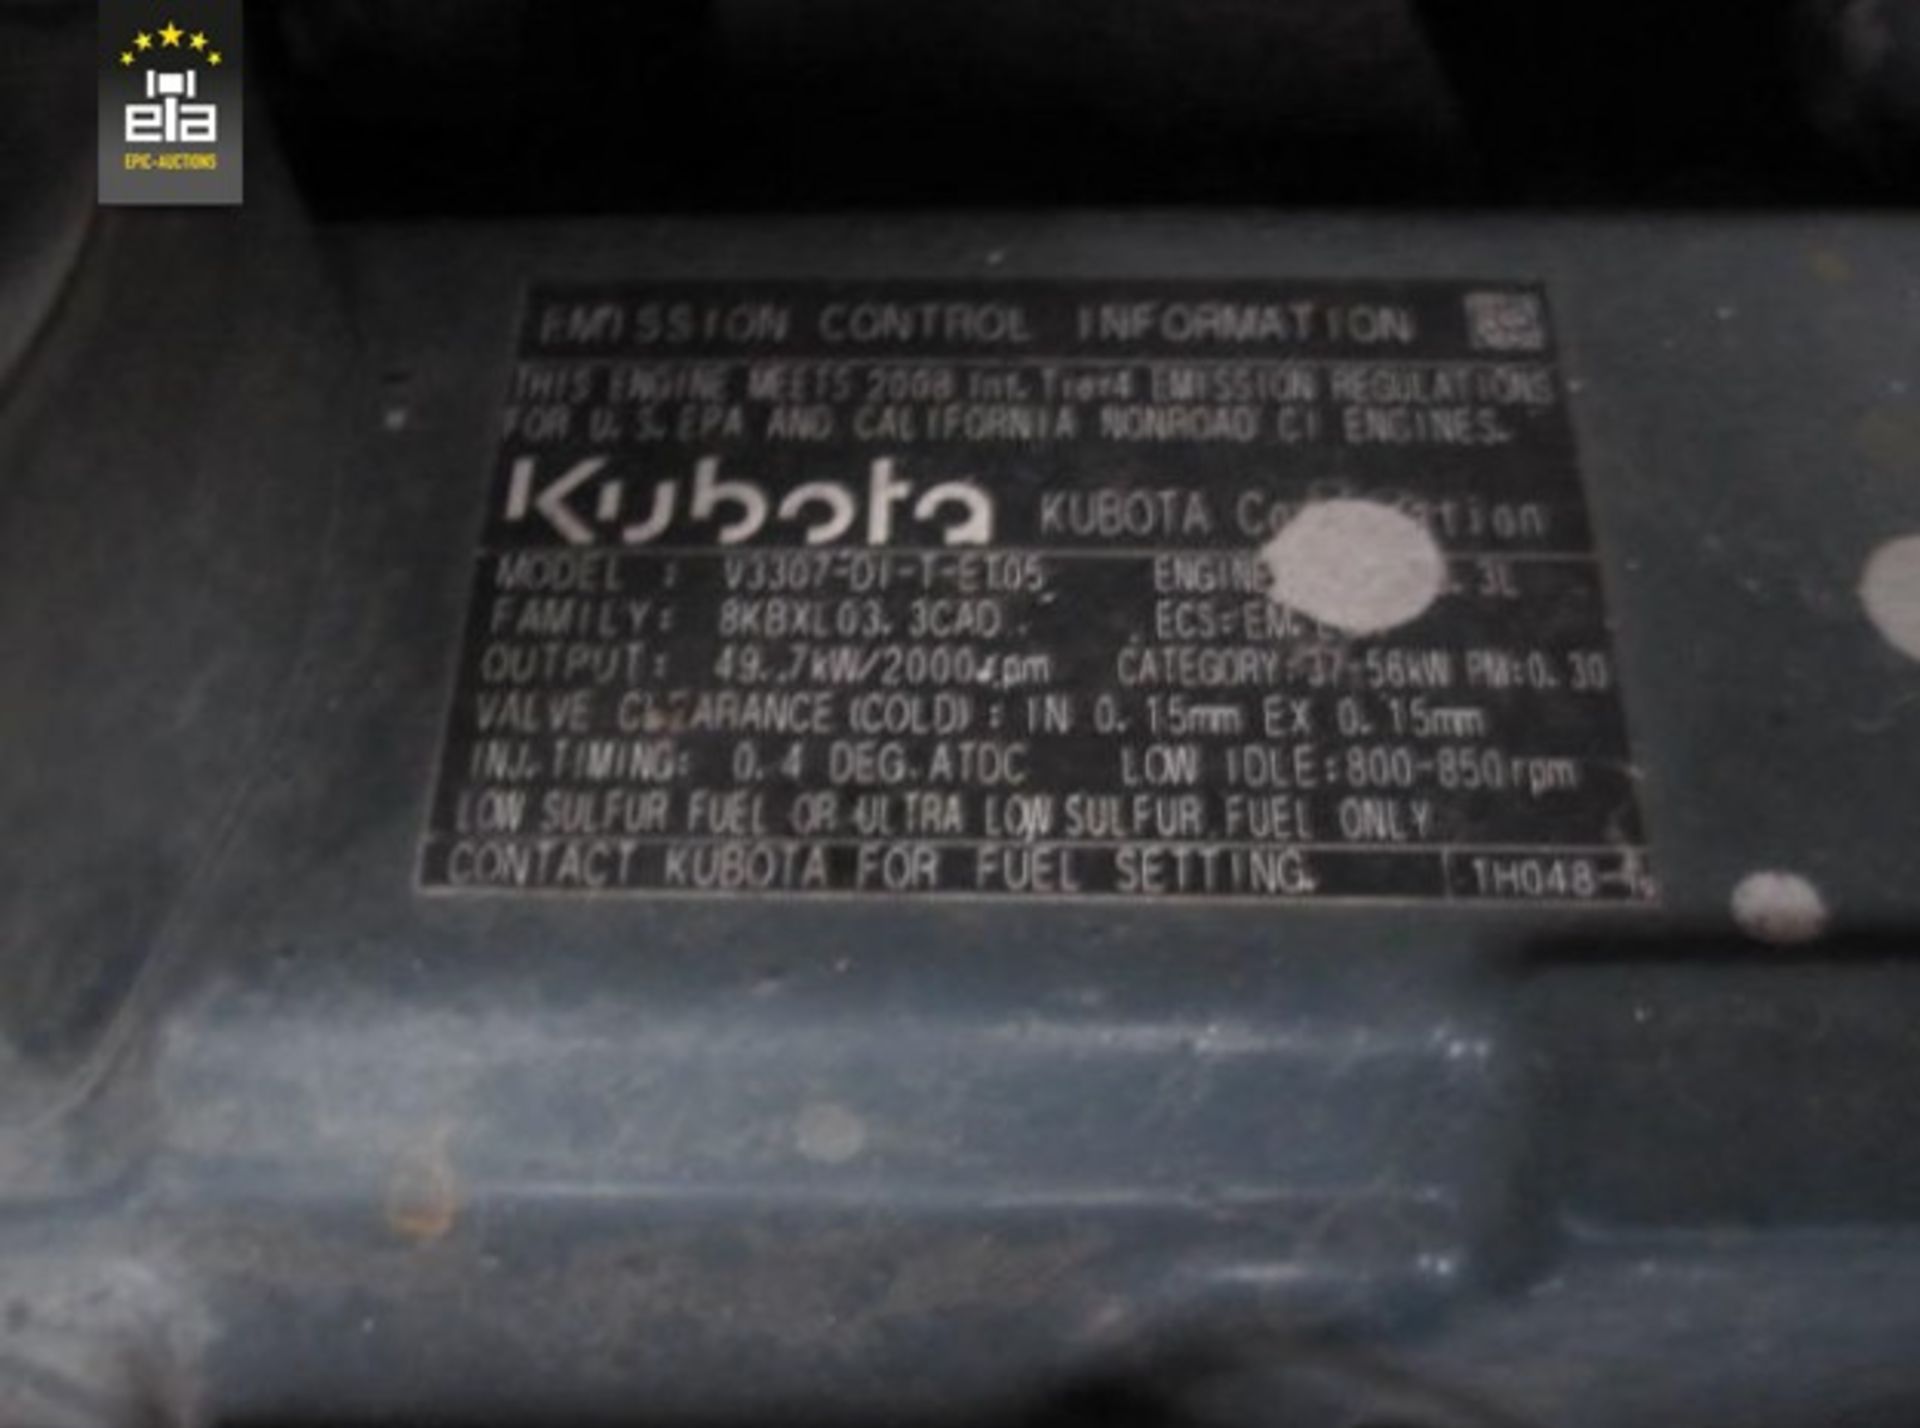 2009 Kubota KX-080-3 Alpha 2PC 20150971 - Image 11 of 20